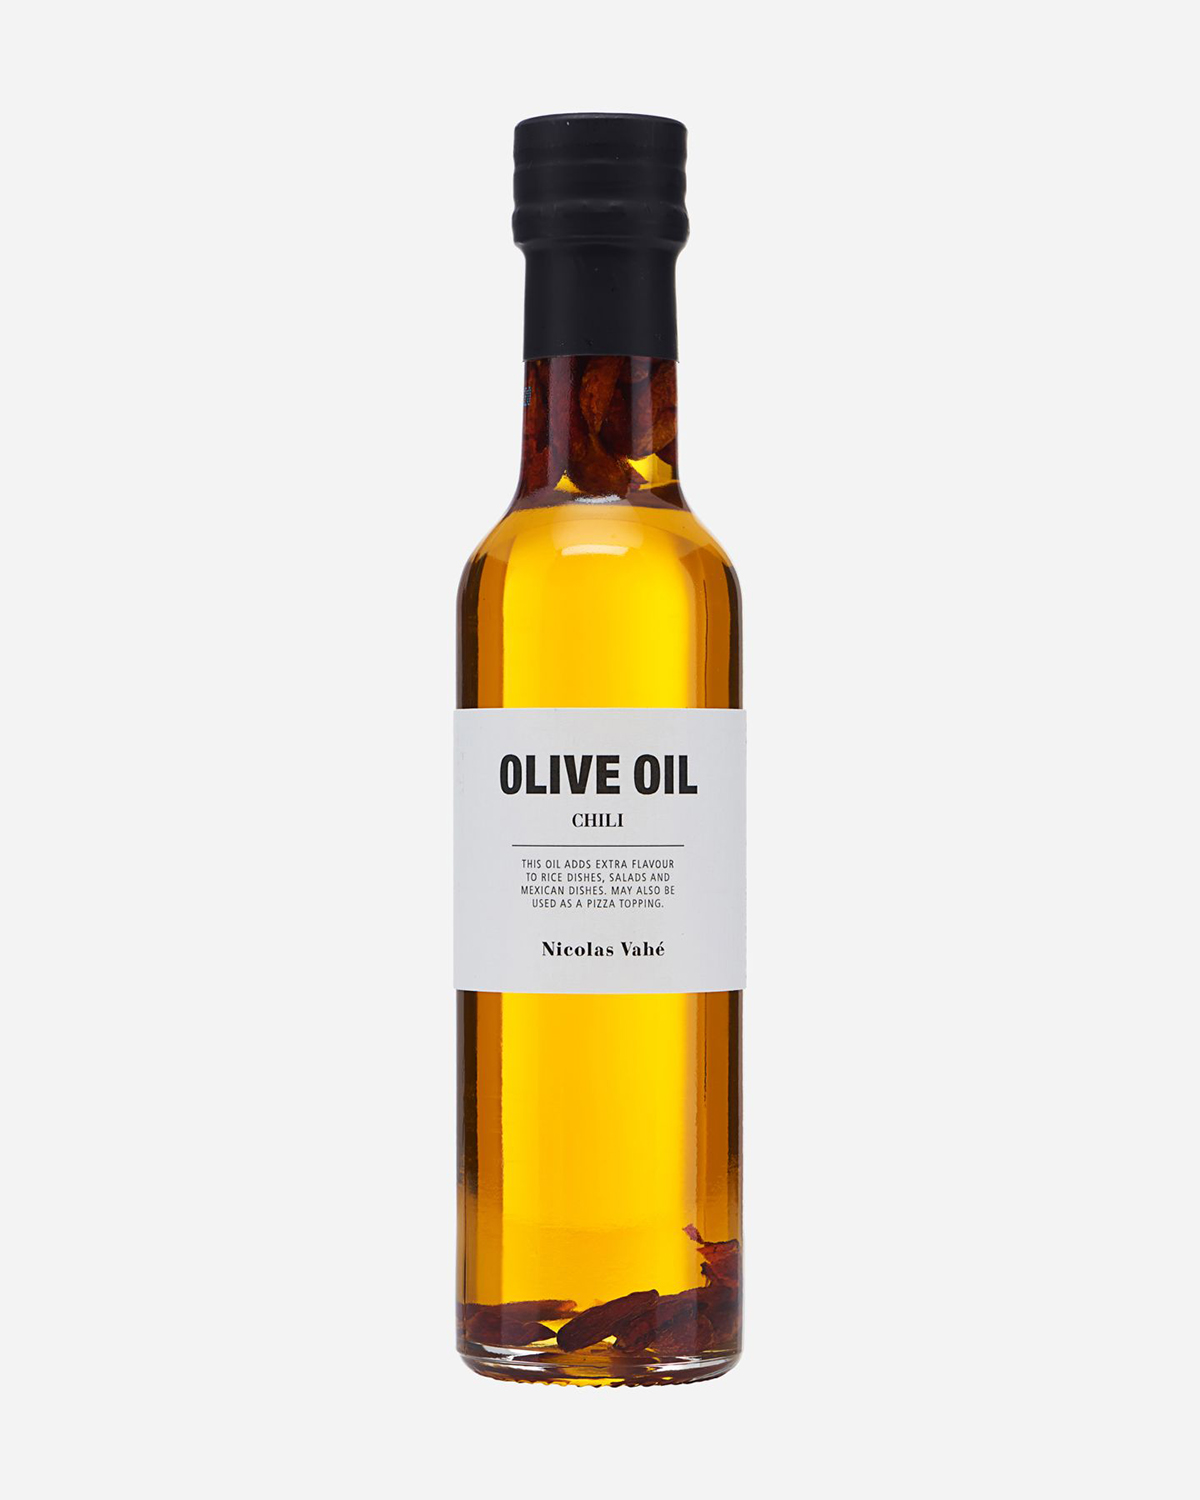 Olive oil, Chilli, 25 cl.